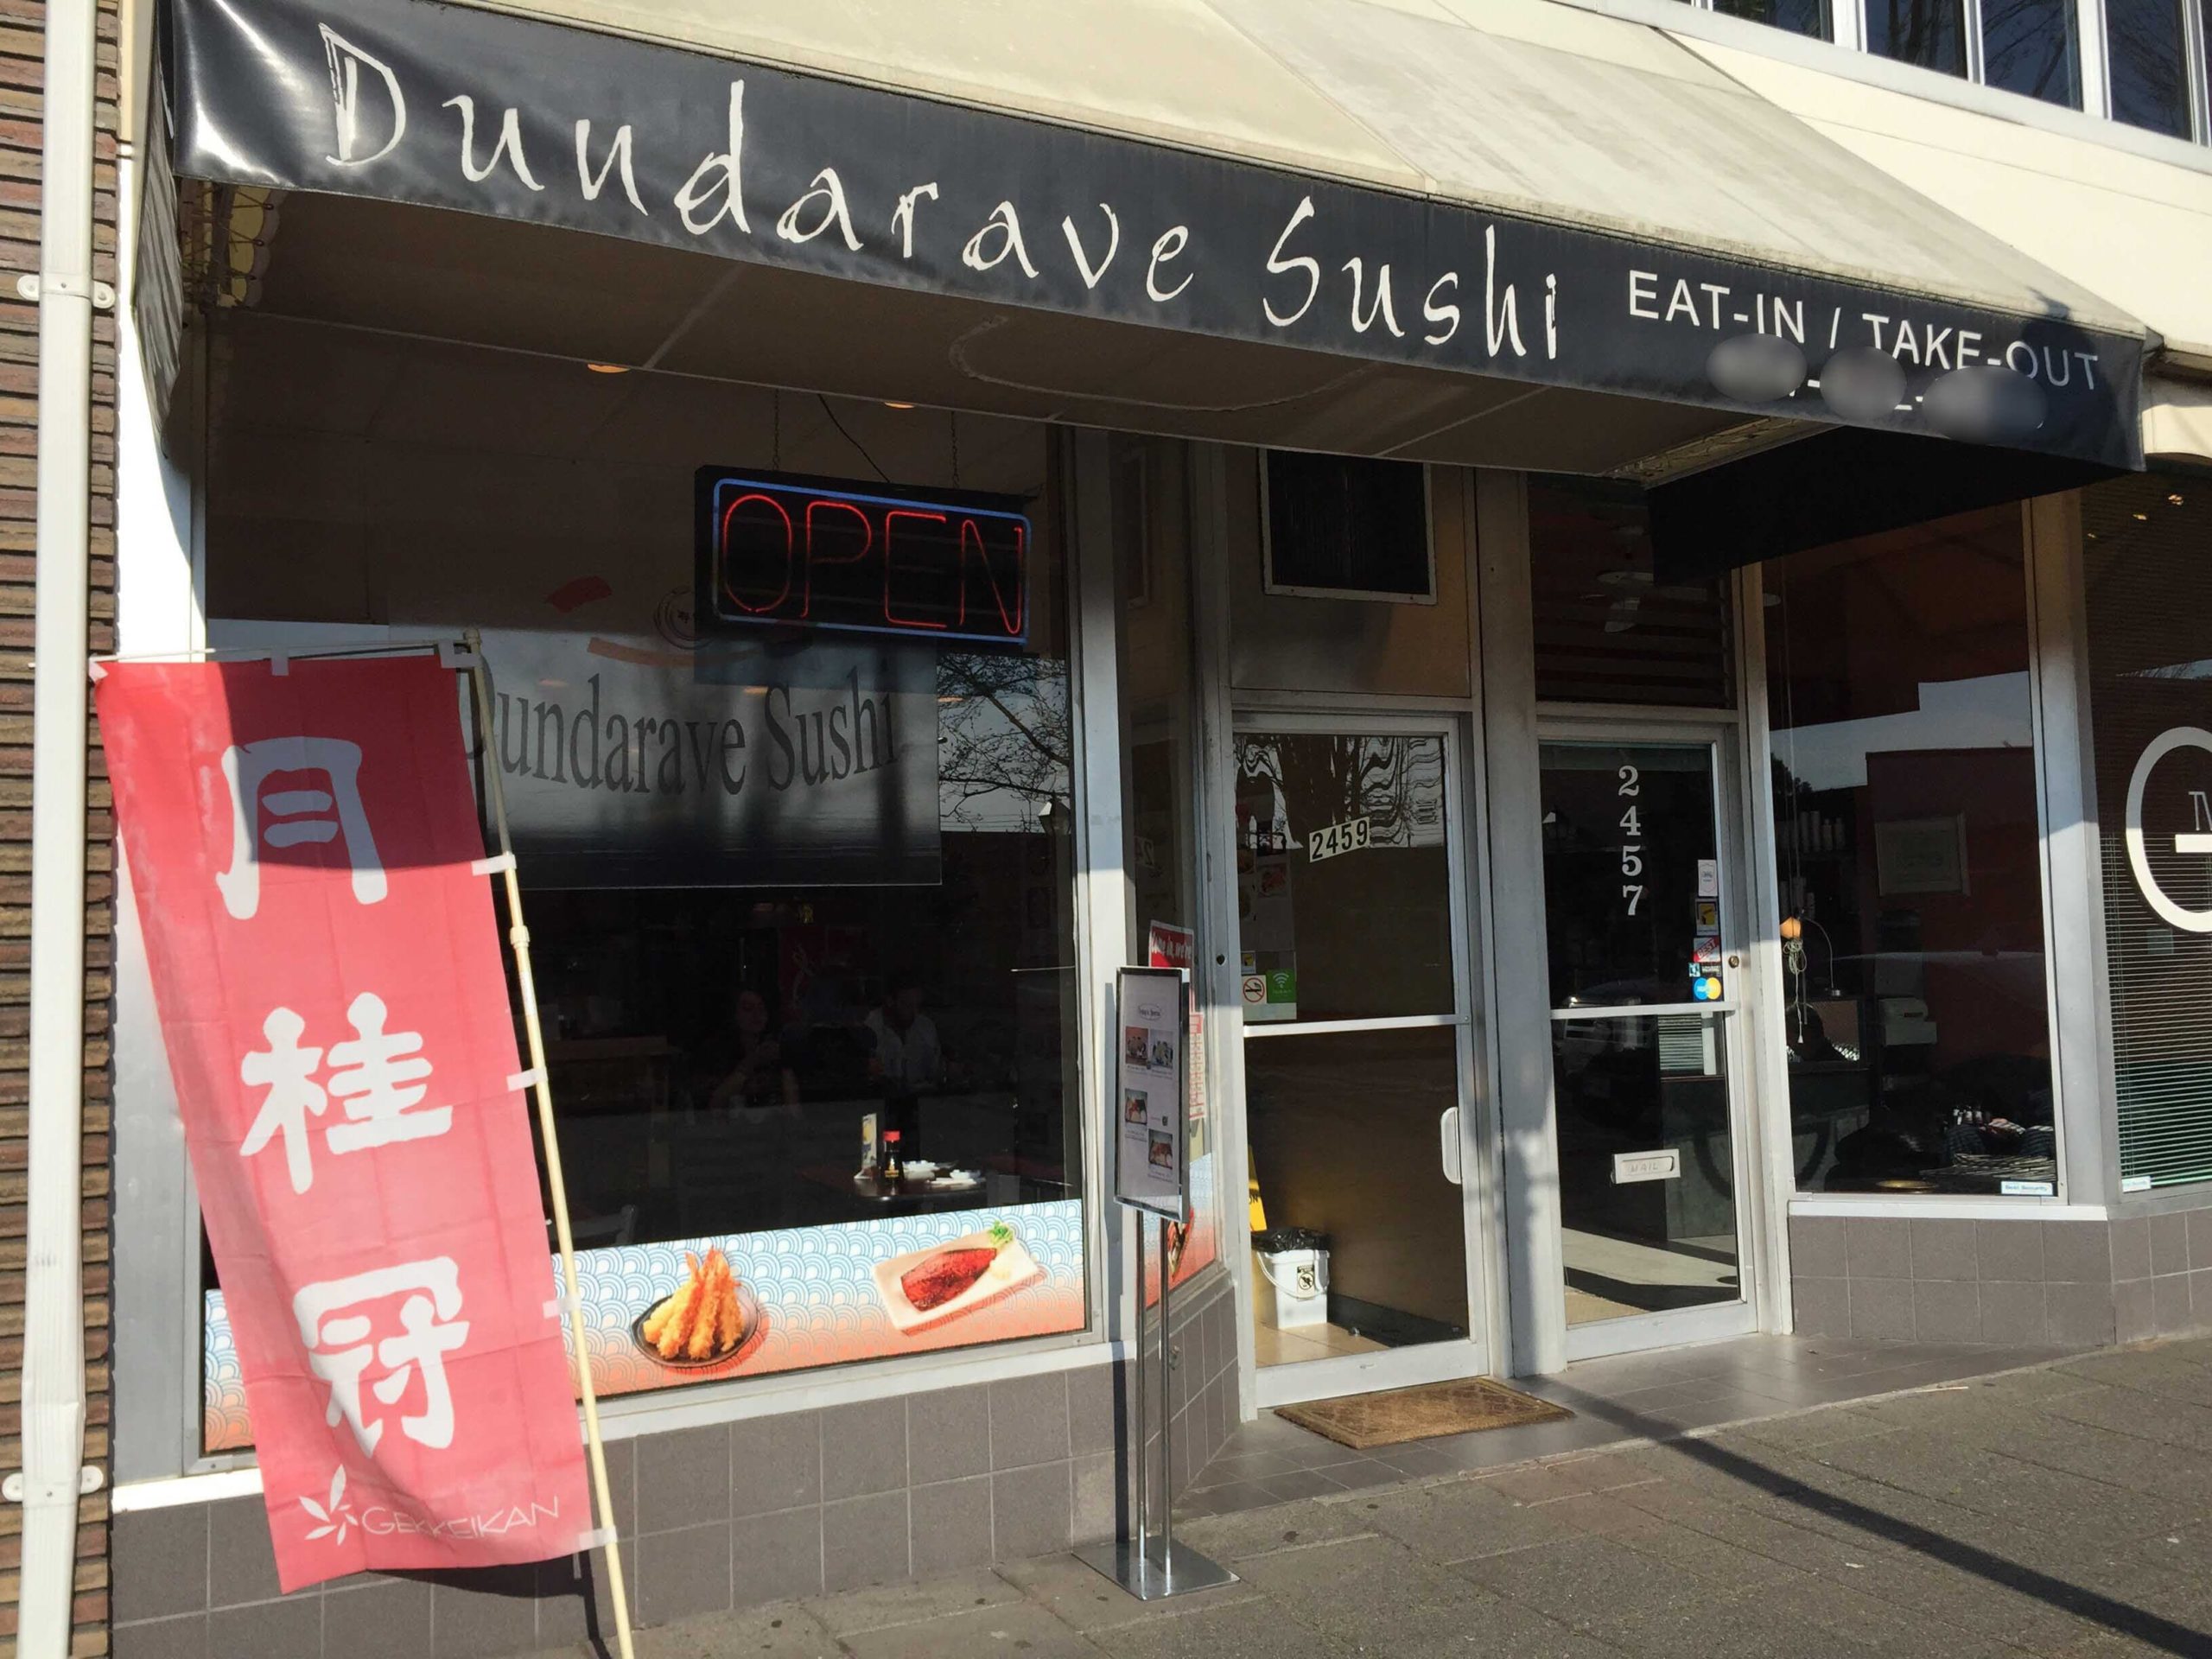 https://adbia.ca/wp-content/uploads/2020/07/Dundarave-Sushi-scaled.jpg